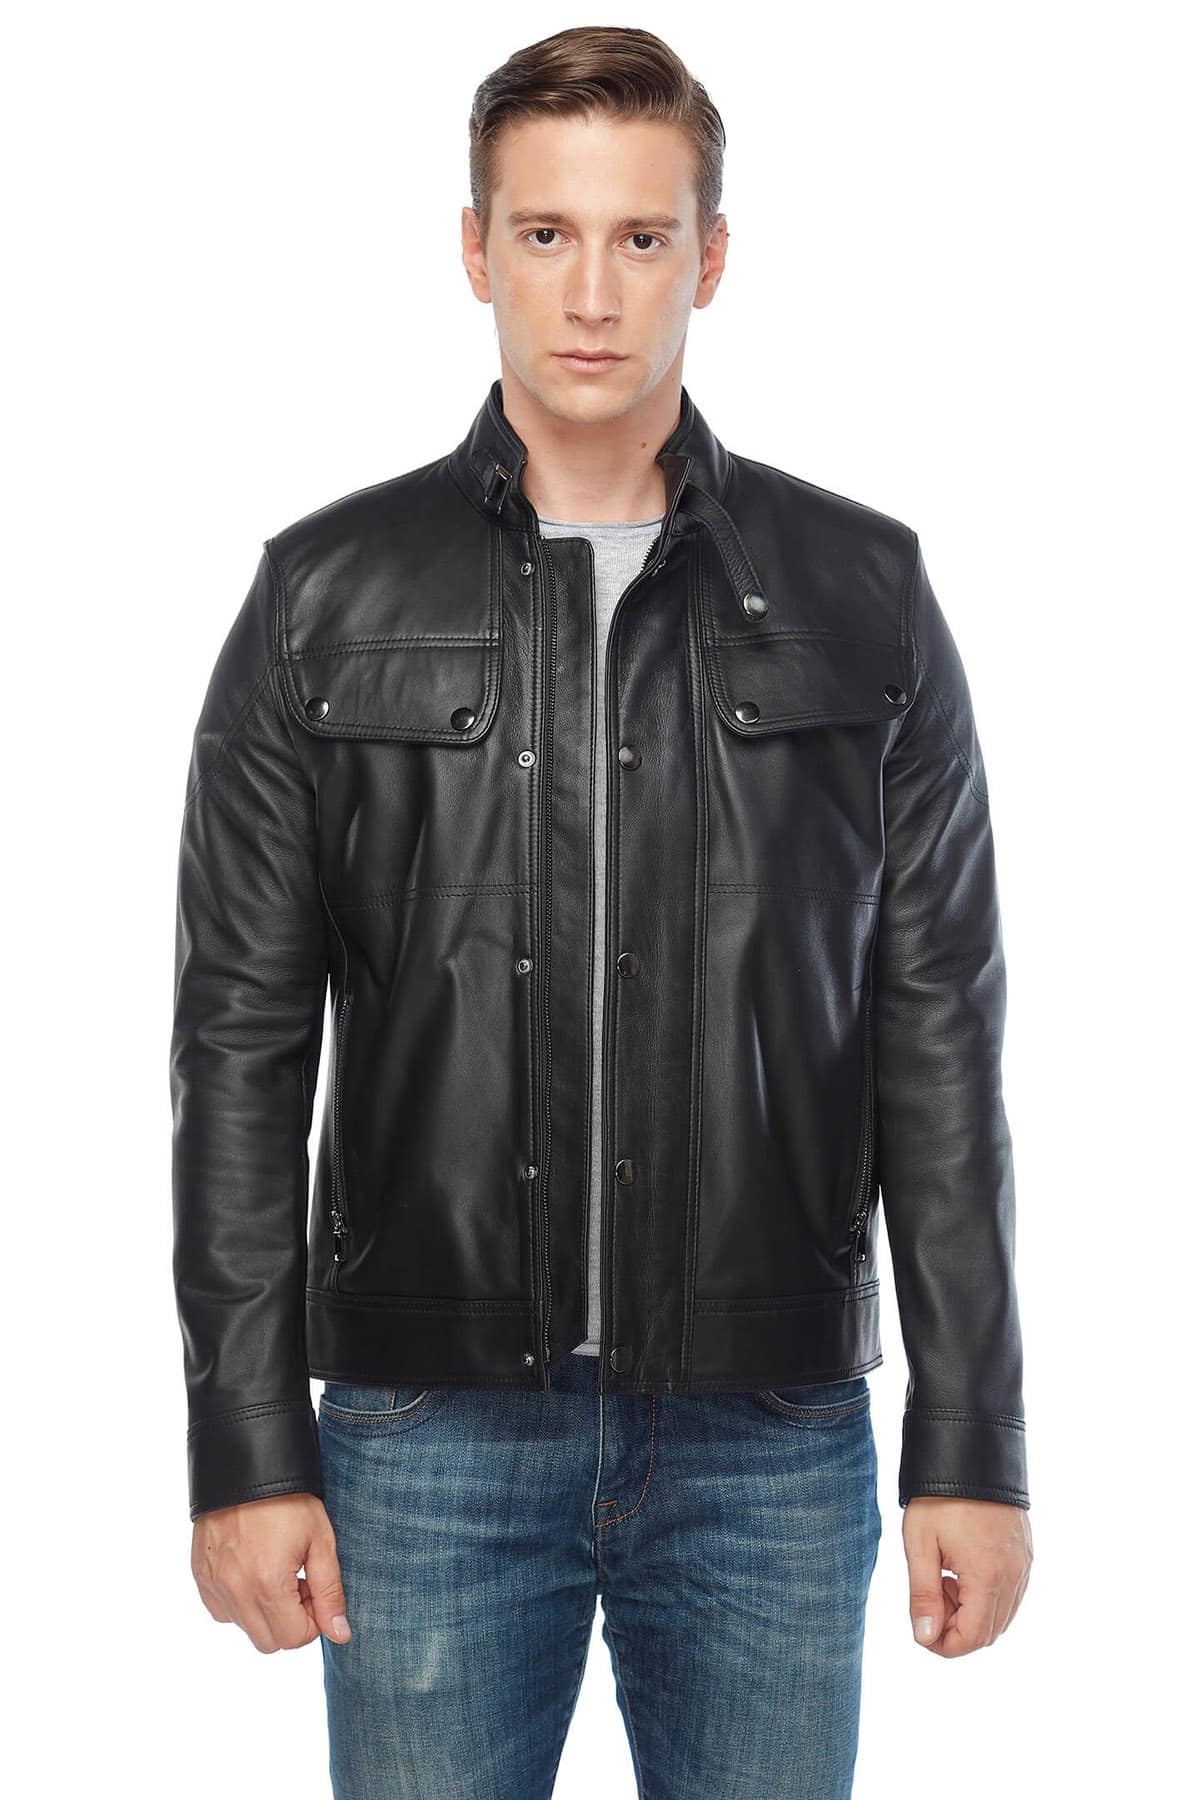 David Beckham Mens Genuine Leather Coat Black for Sale